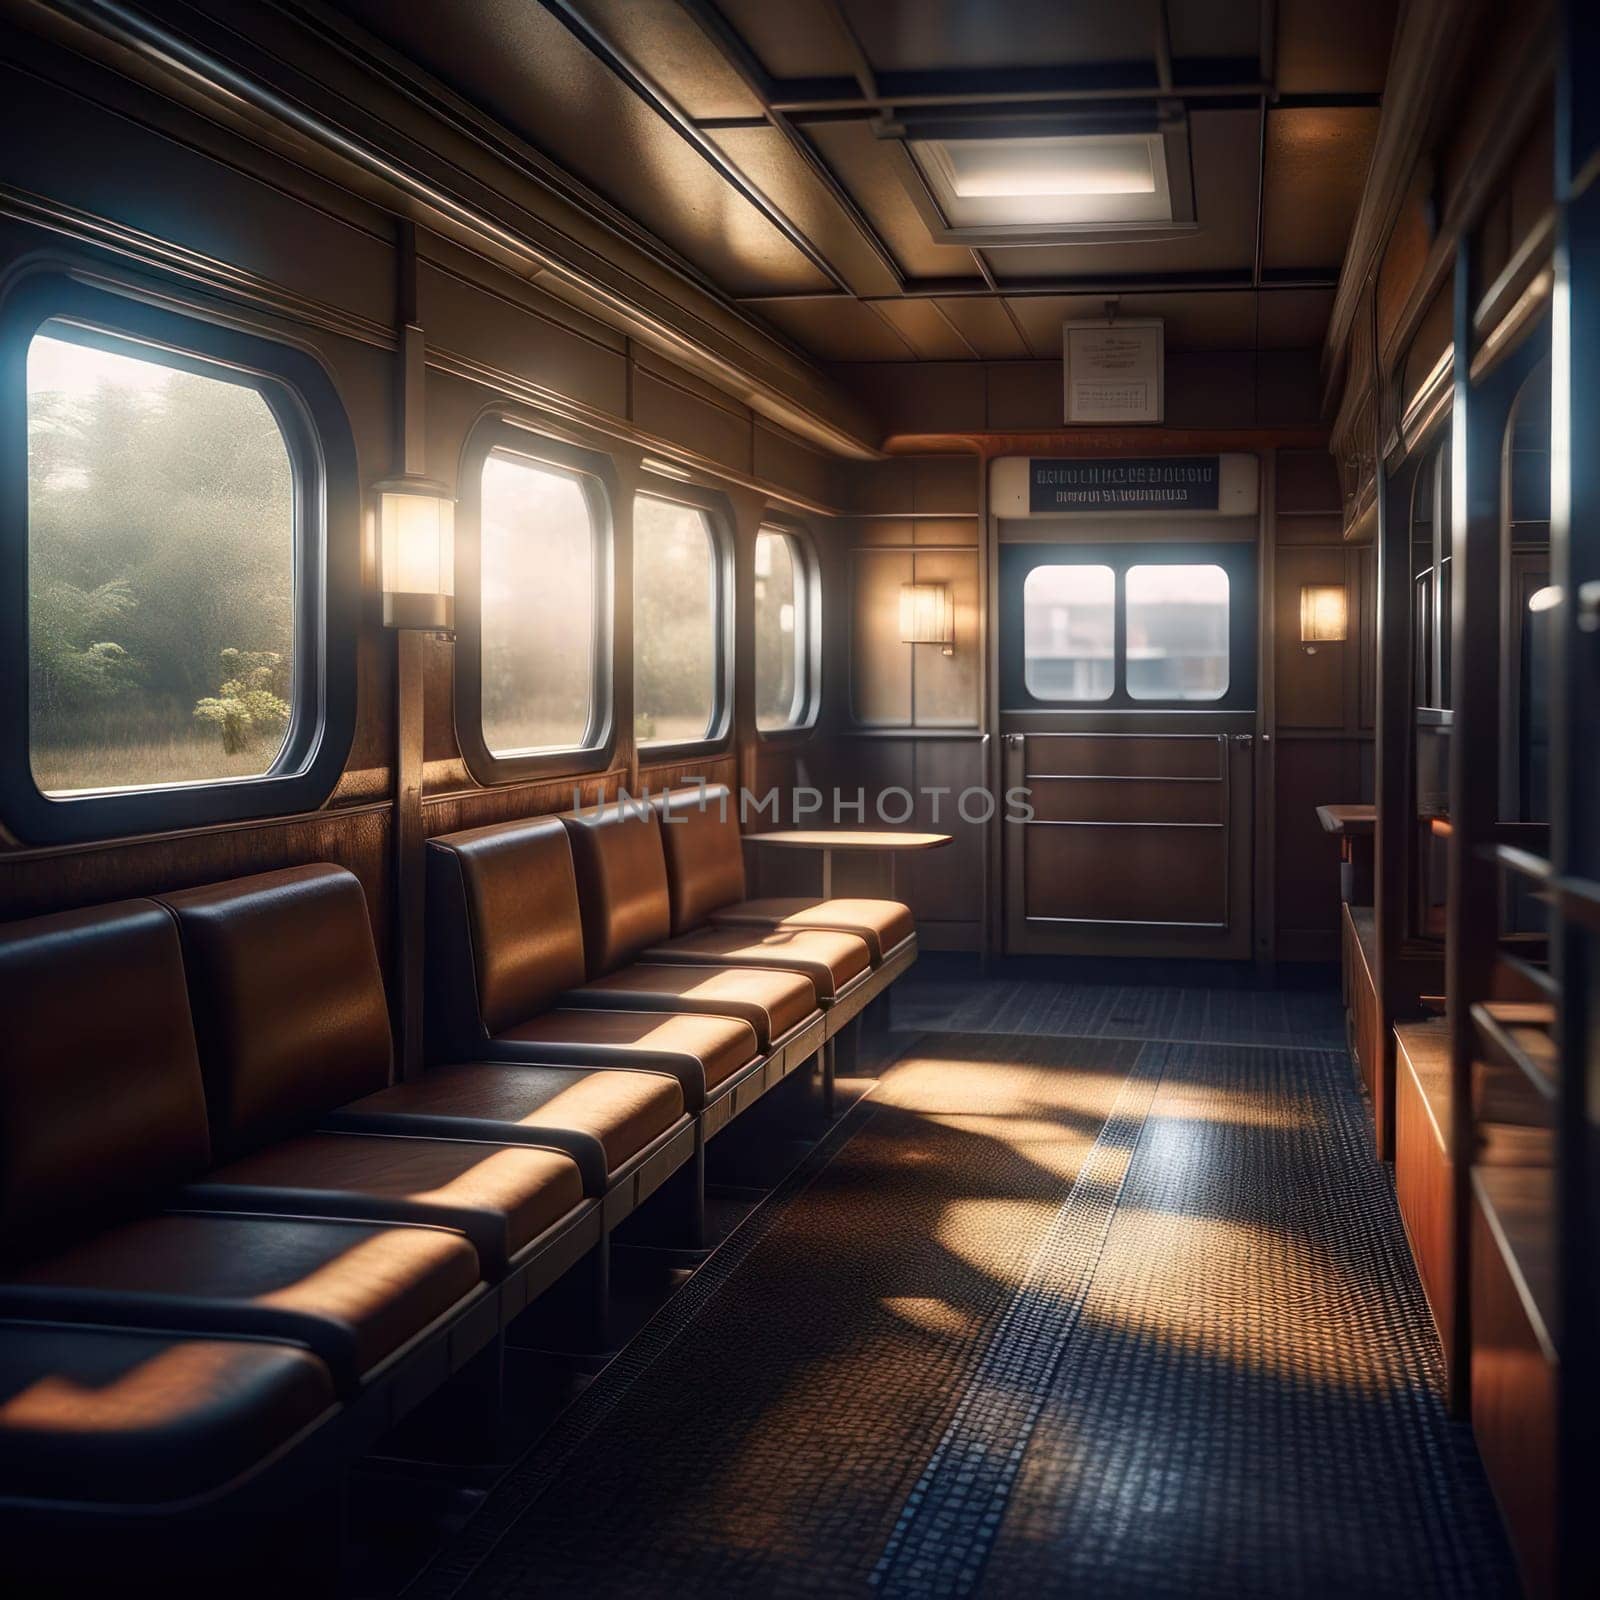 Train car. Image created by AI